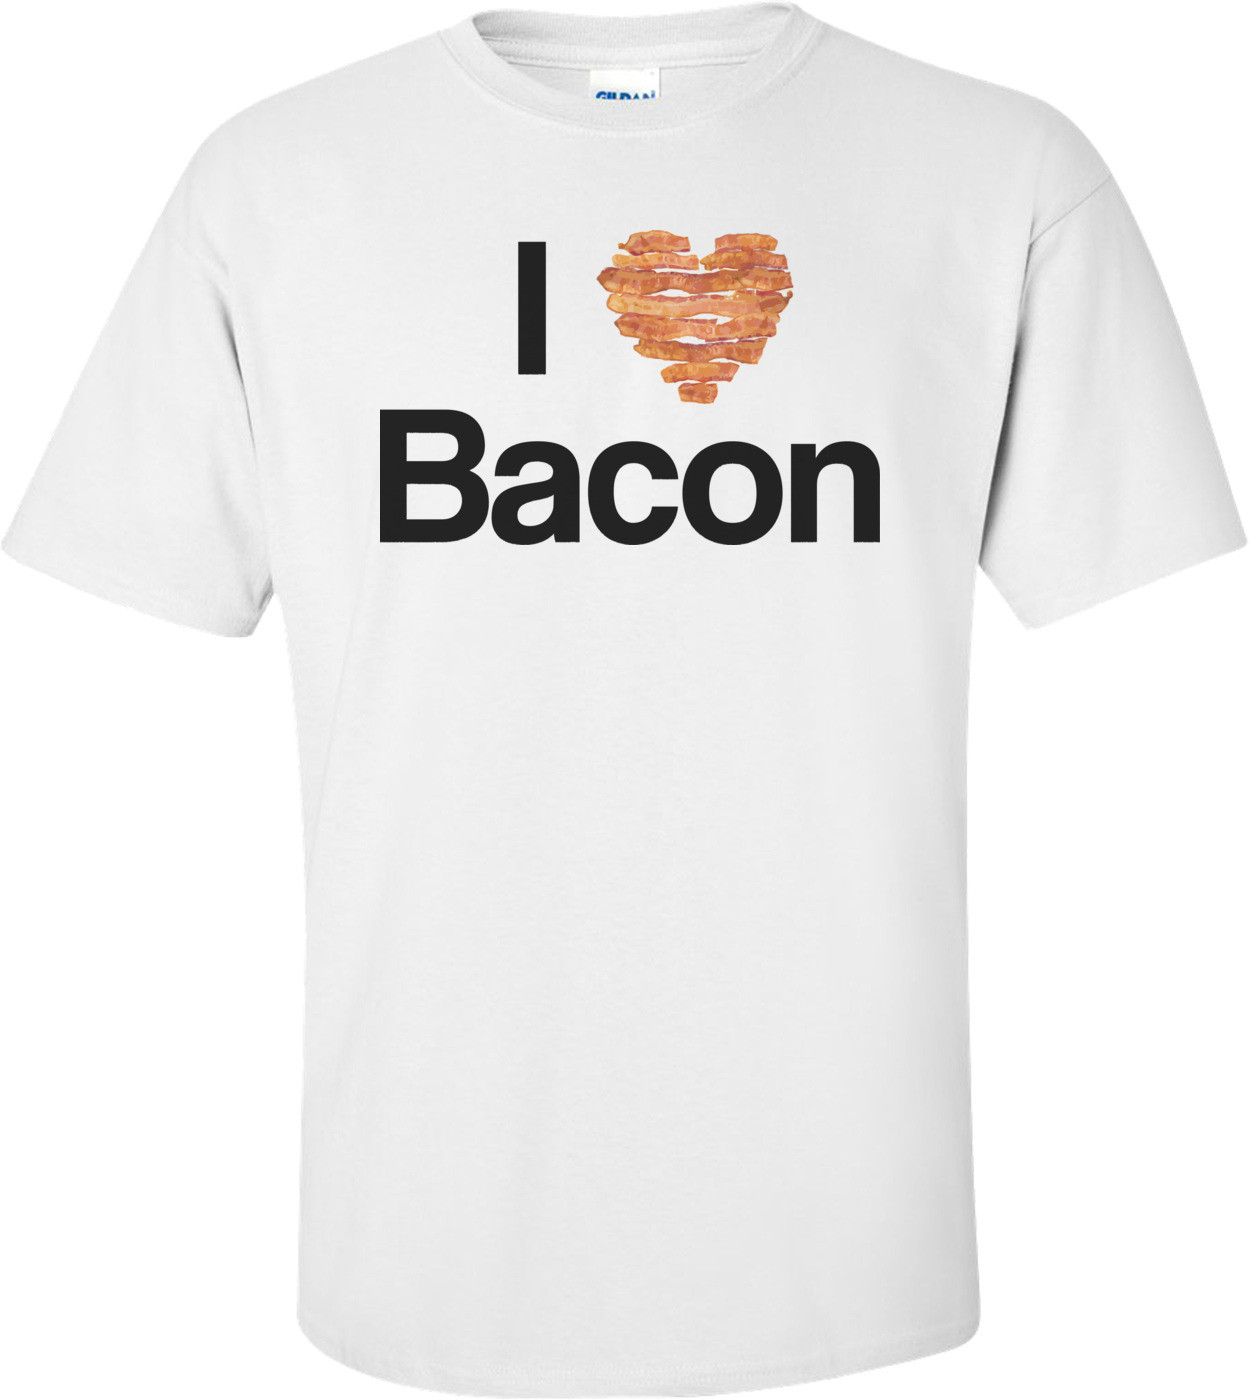 I Heart Bacon